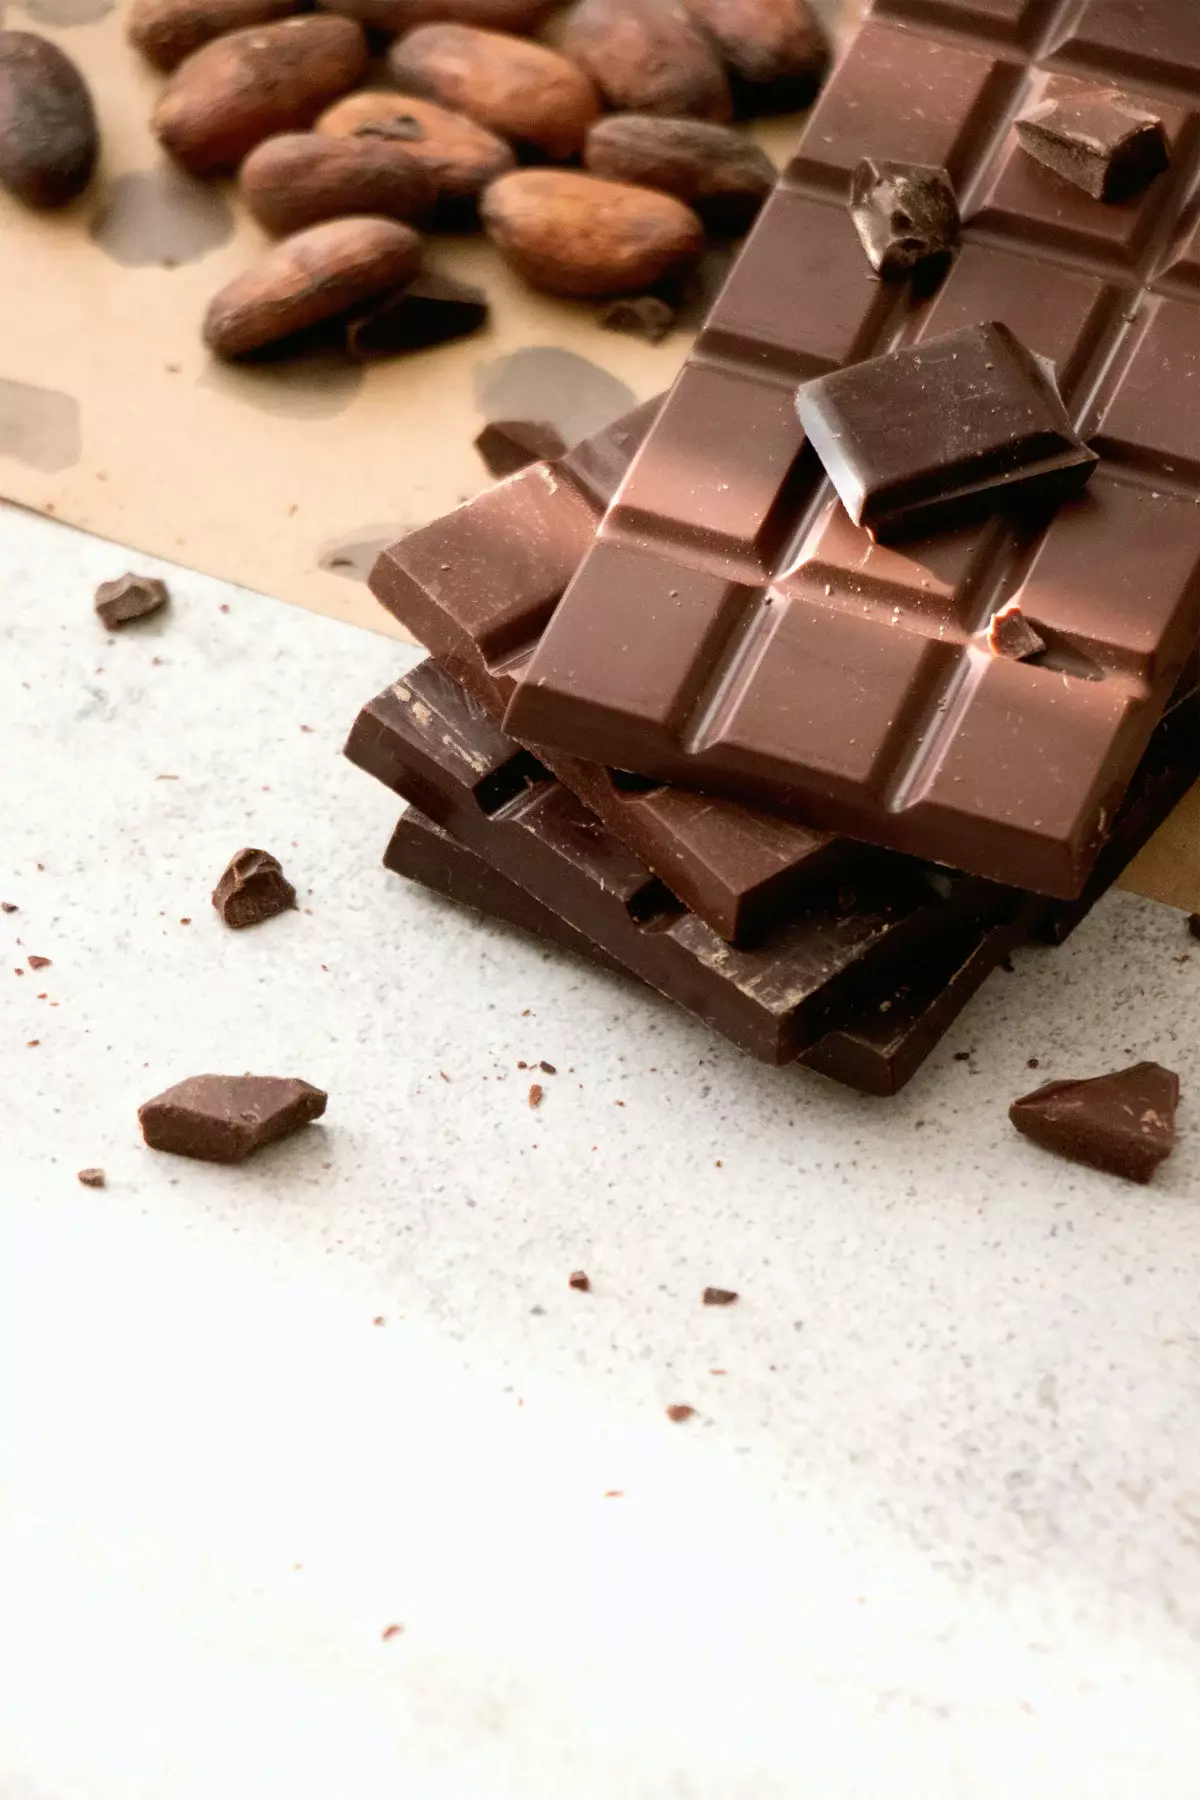 Цены на шоколадные изделия казахстанского производства выросли на 20% с начала года и продолжат повышаться